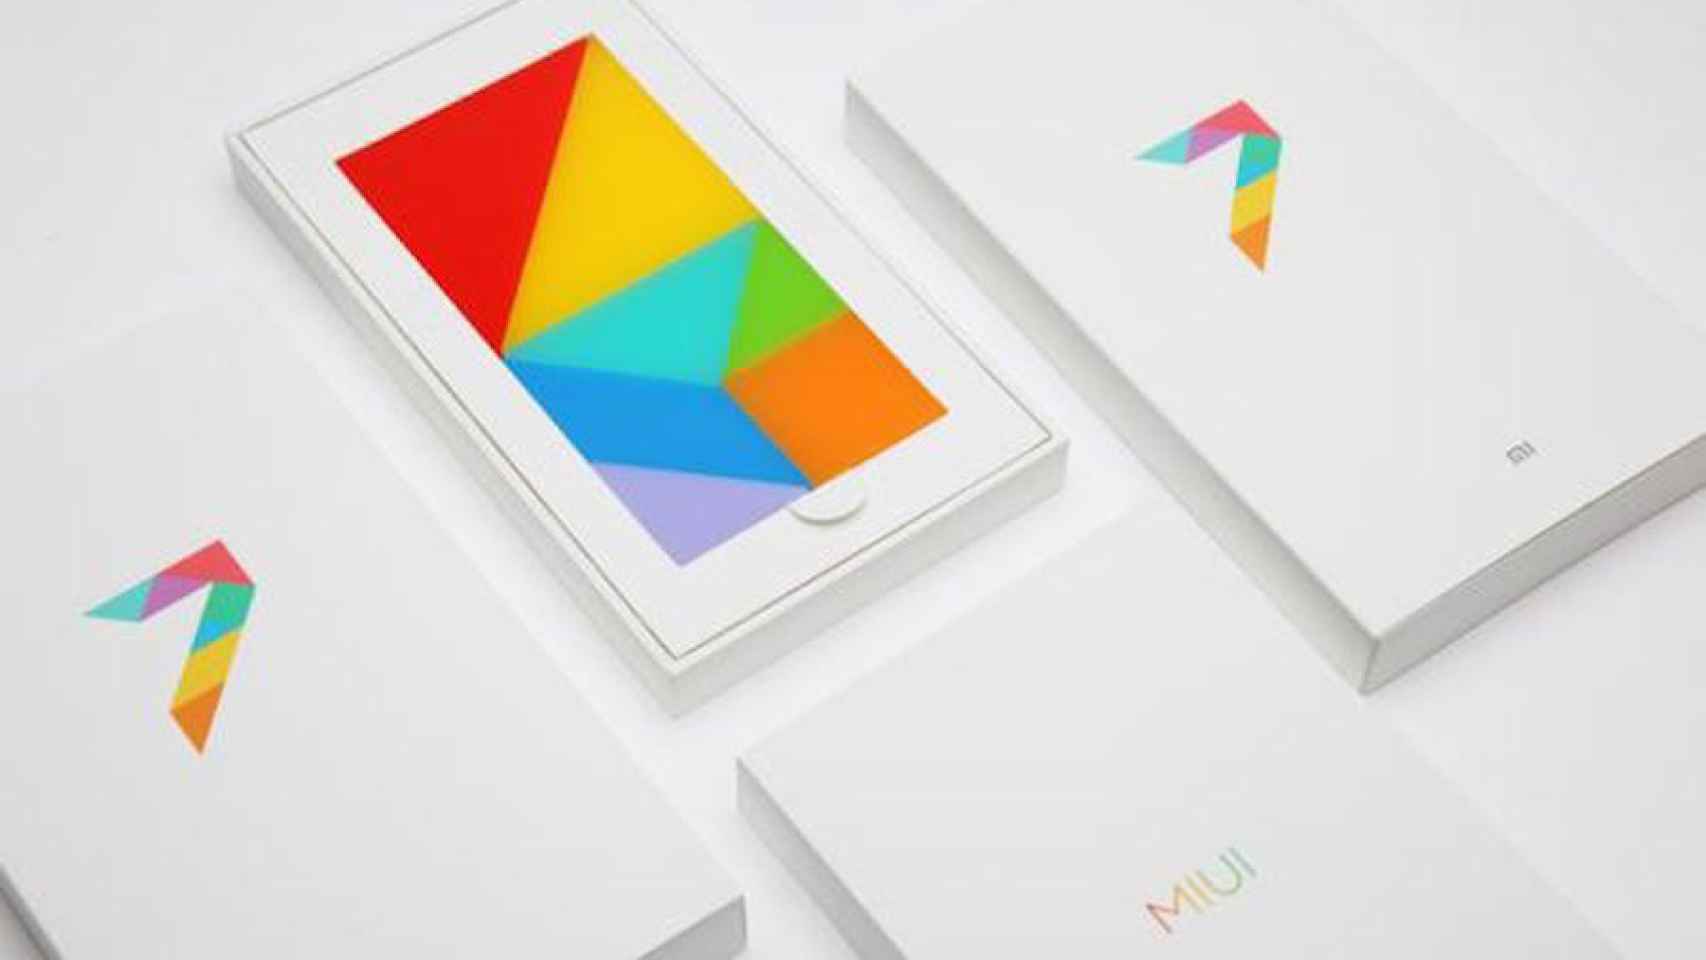 MIUI 7 es un lavado de cara: la mayoría de teléfonos de Xiaomi seguirán con Android Kitkat